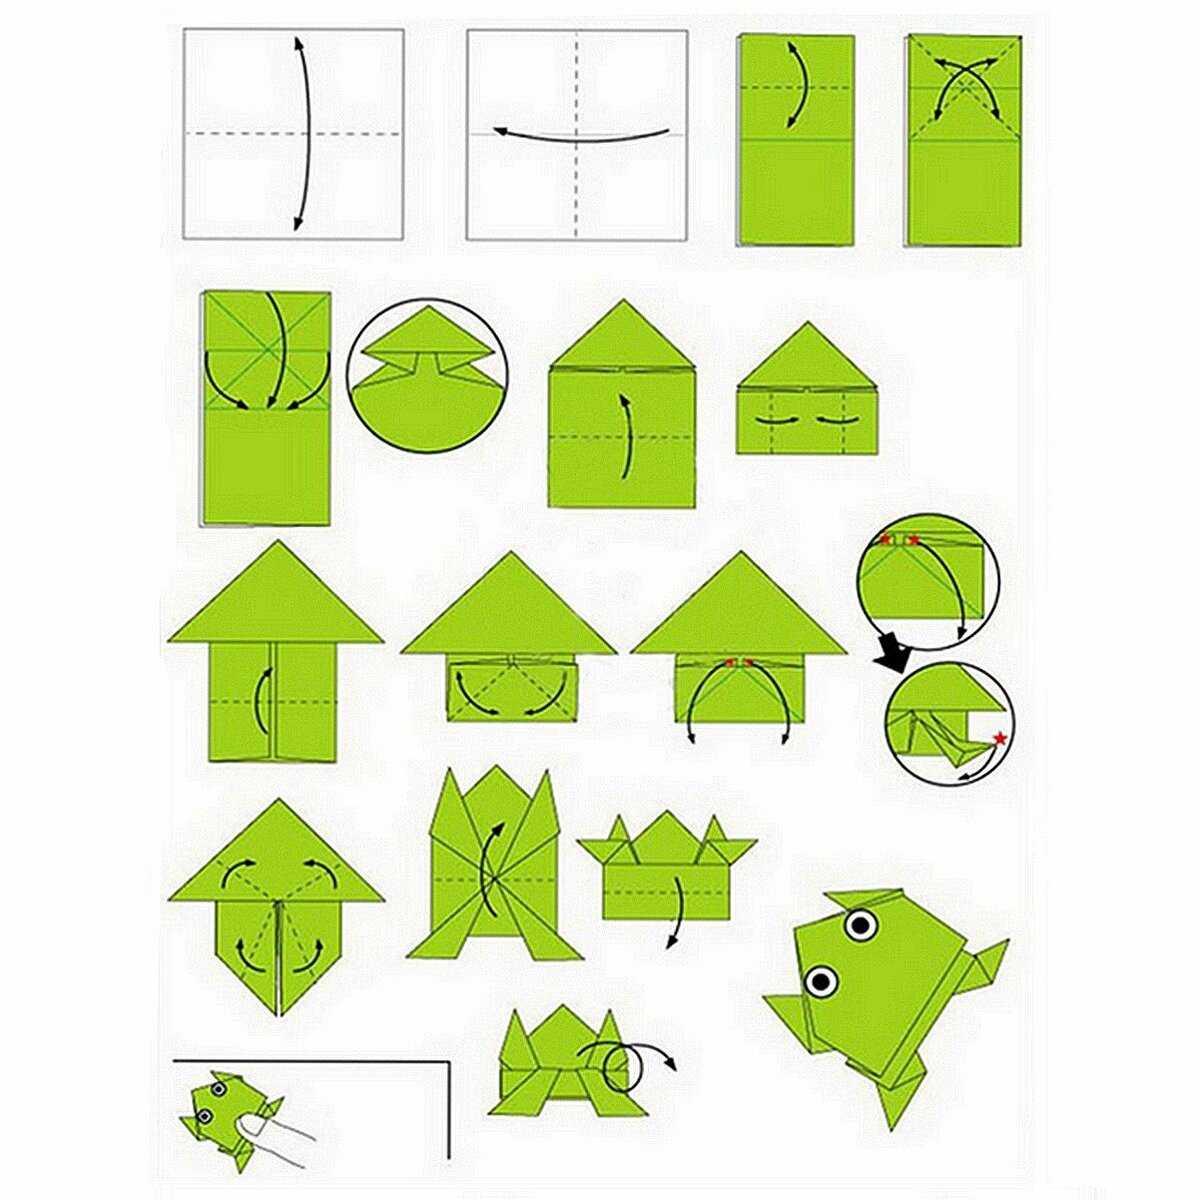 Чтобы сделать из бумаги интересную игрушку "прыгающая лягушка" техника оригами воспользуйтесь подробным описанием работы и схематическим изображением